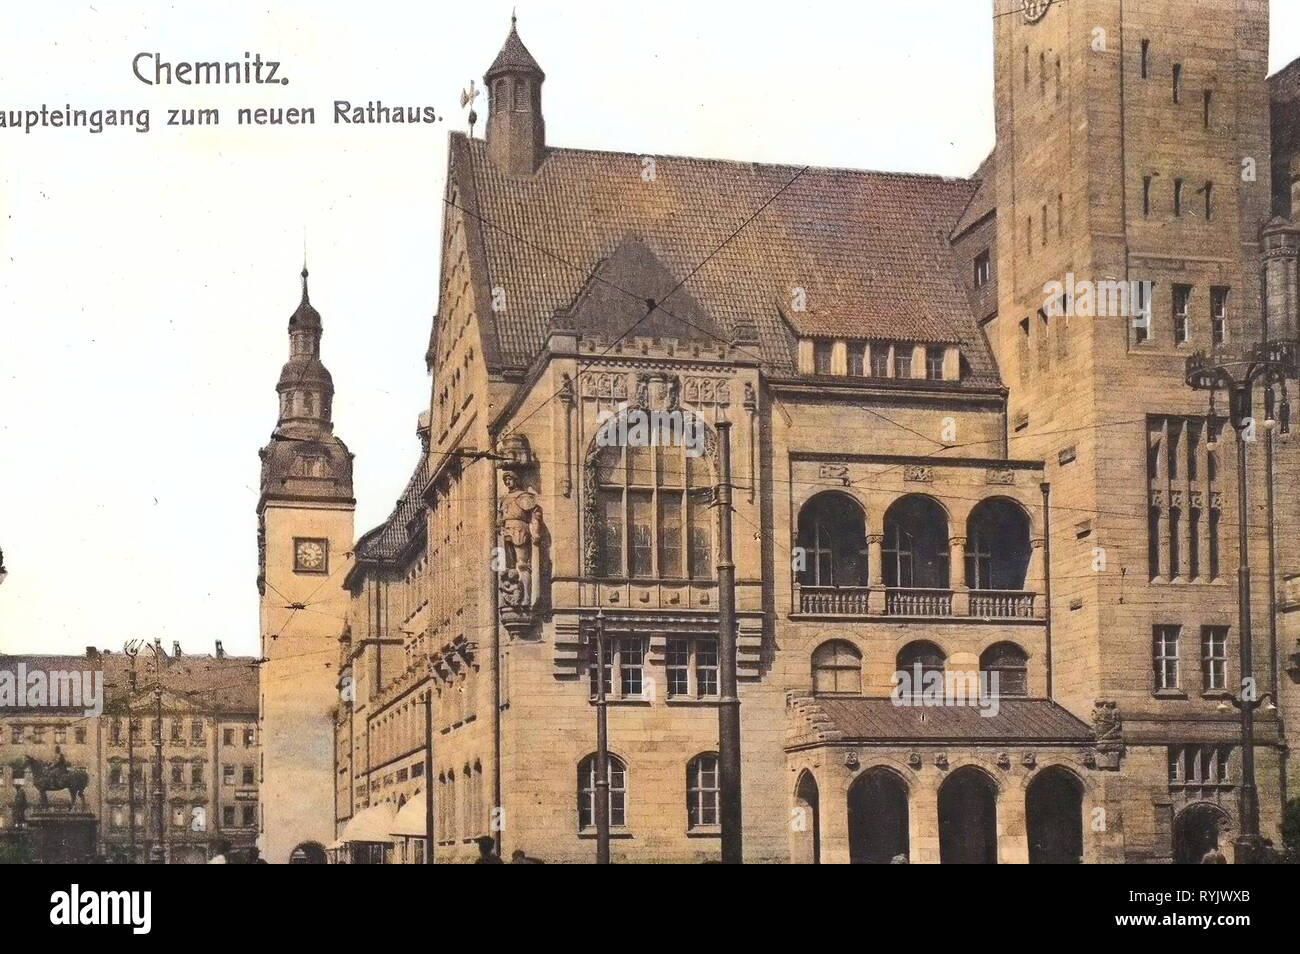 Town halls in Chemnitz, Buildings in Chemnitz, 1911, Chemnitz, Haupteingang zum neuen Rathaus Stock Photo